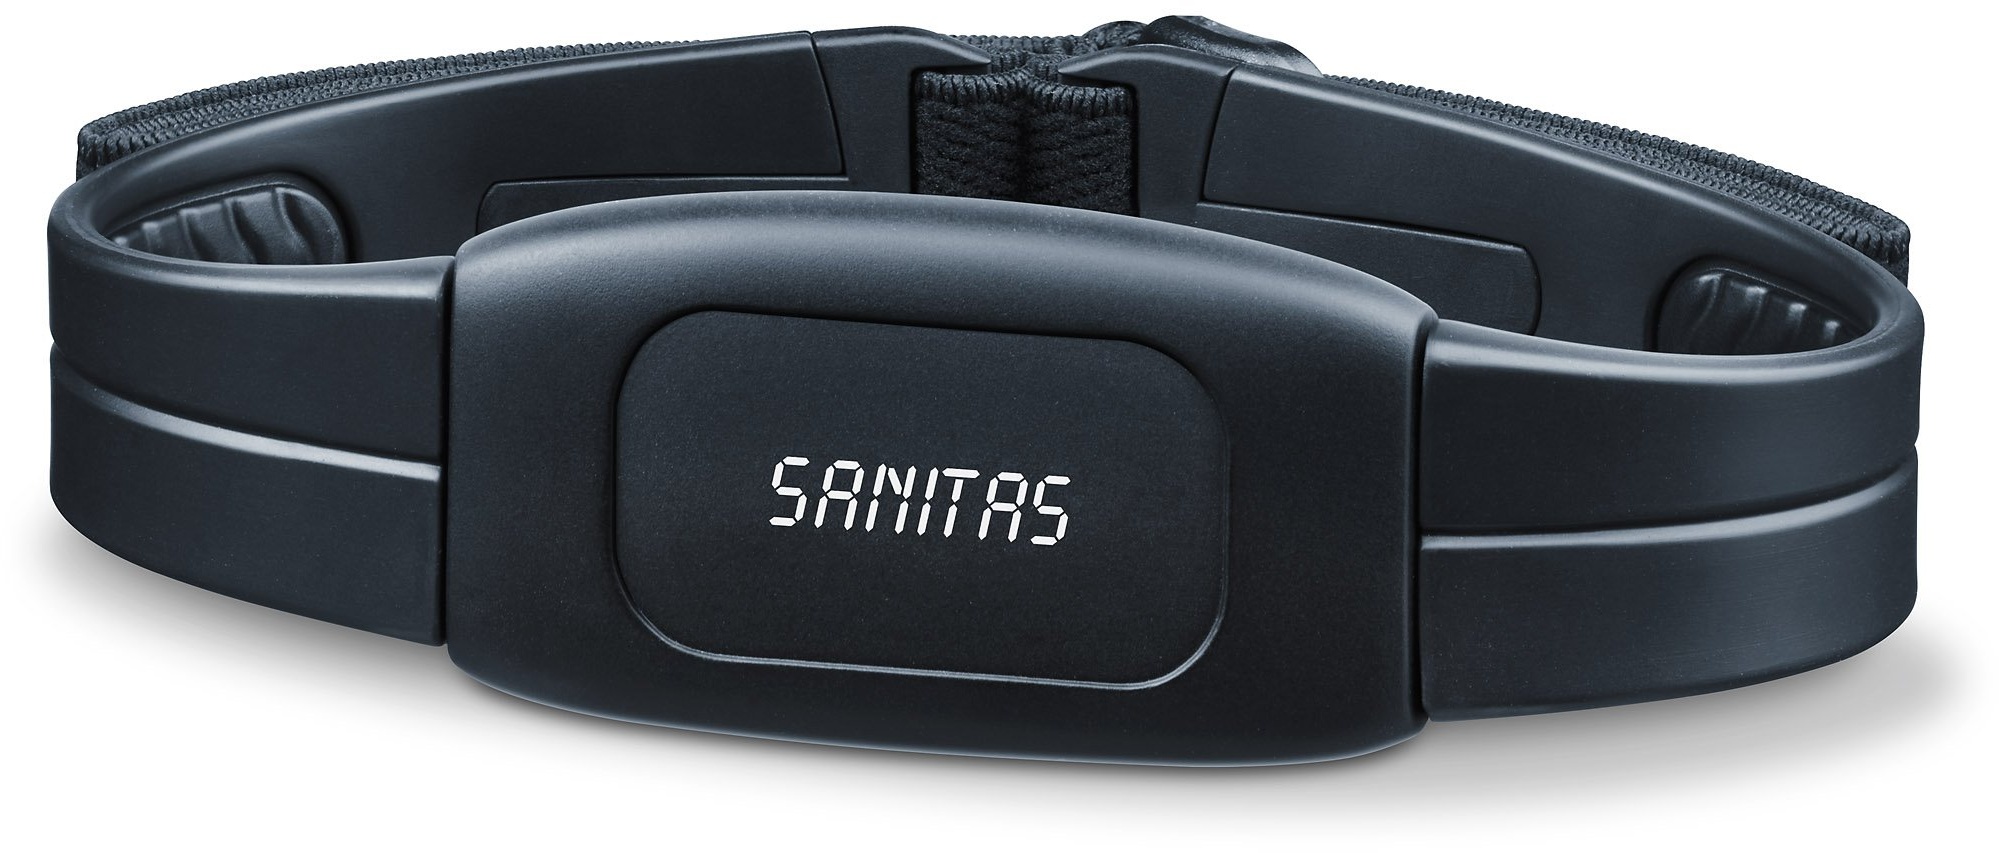 Sanitas Bluetooth Brustgurt SPM 230, zur Herzfrequenzmessung mit dem Smartphone und allen gängigen Trainings und Fitness Apps wie Runtastic; Für ein gezieltes Ausdauertraining auch mit analogen Trainingsgeräten und Pulsuhren verwendbar; kompatibel mit iPhone 4s/5/5s/5c/6/6s/6 Plus und Bluetooth (R) Smart Ready Android Geräten mit Android 4.4